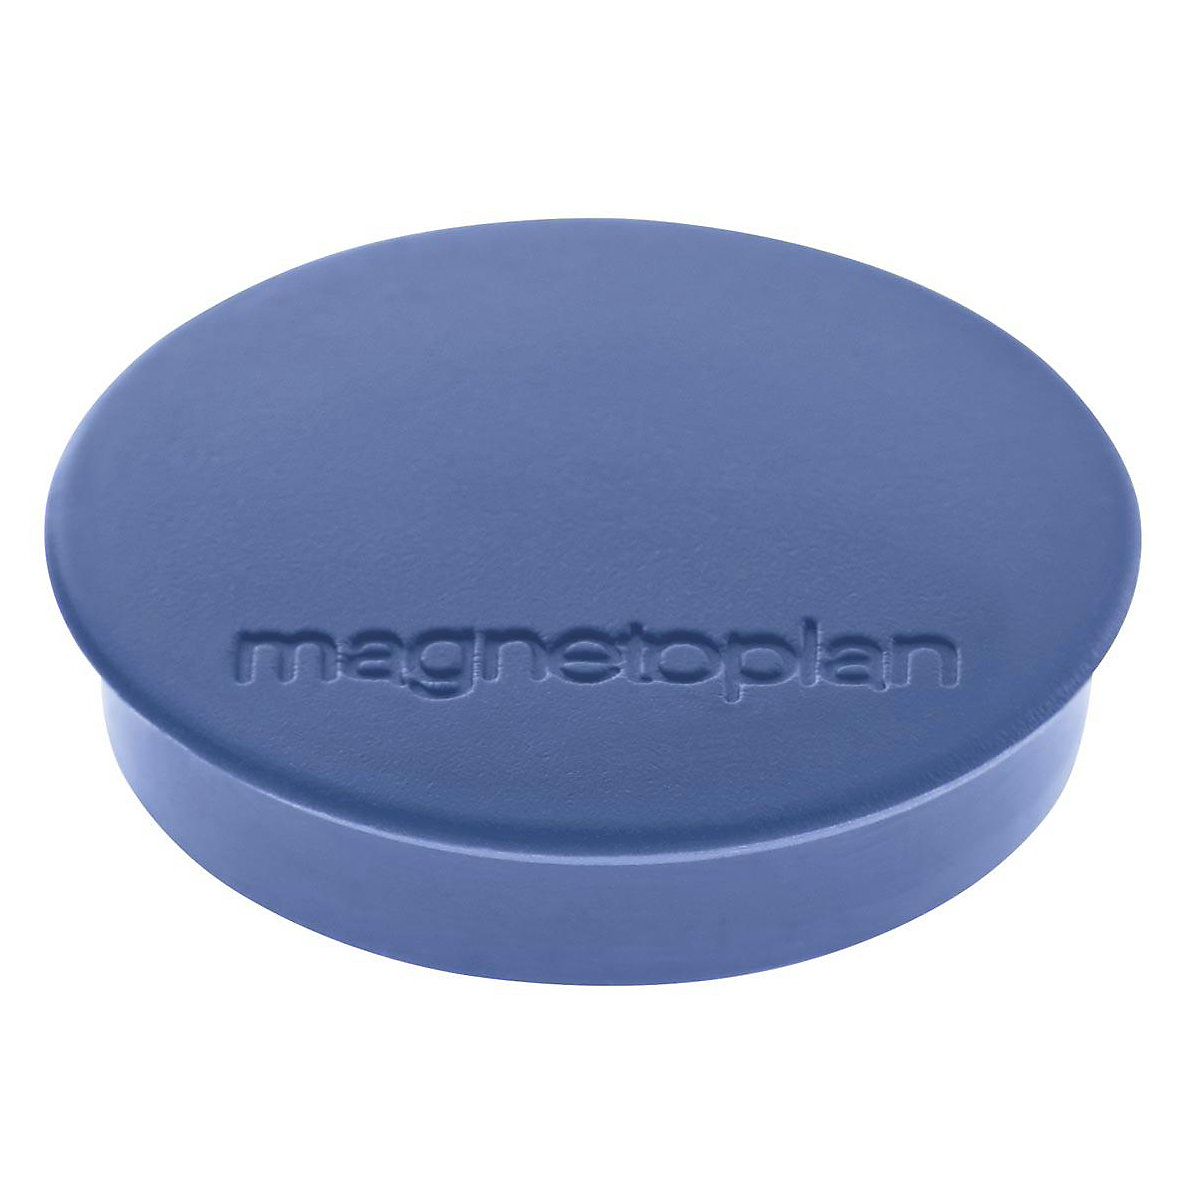 Magnet DISCOFIX STANDARD magnetoplan, Ø 30 mm, VE 80 Stk, dunkelblau-10